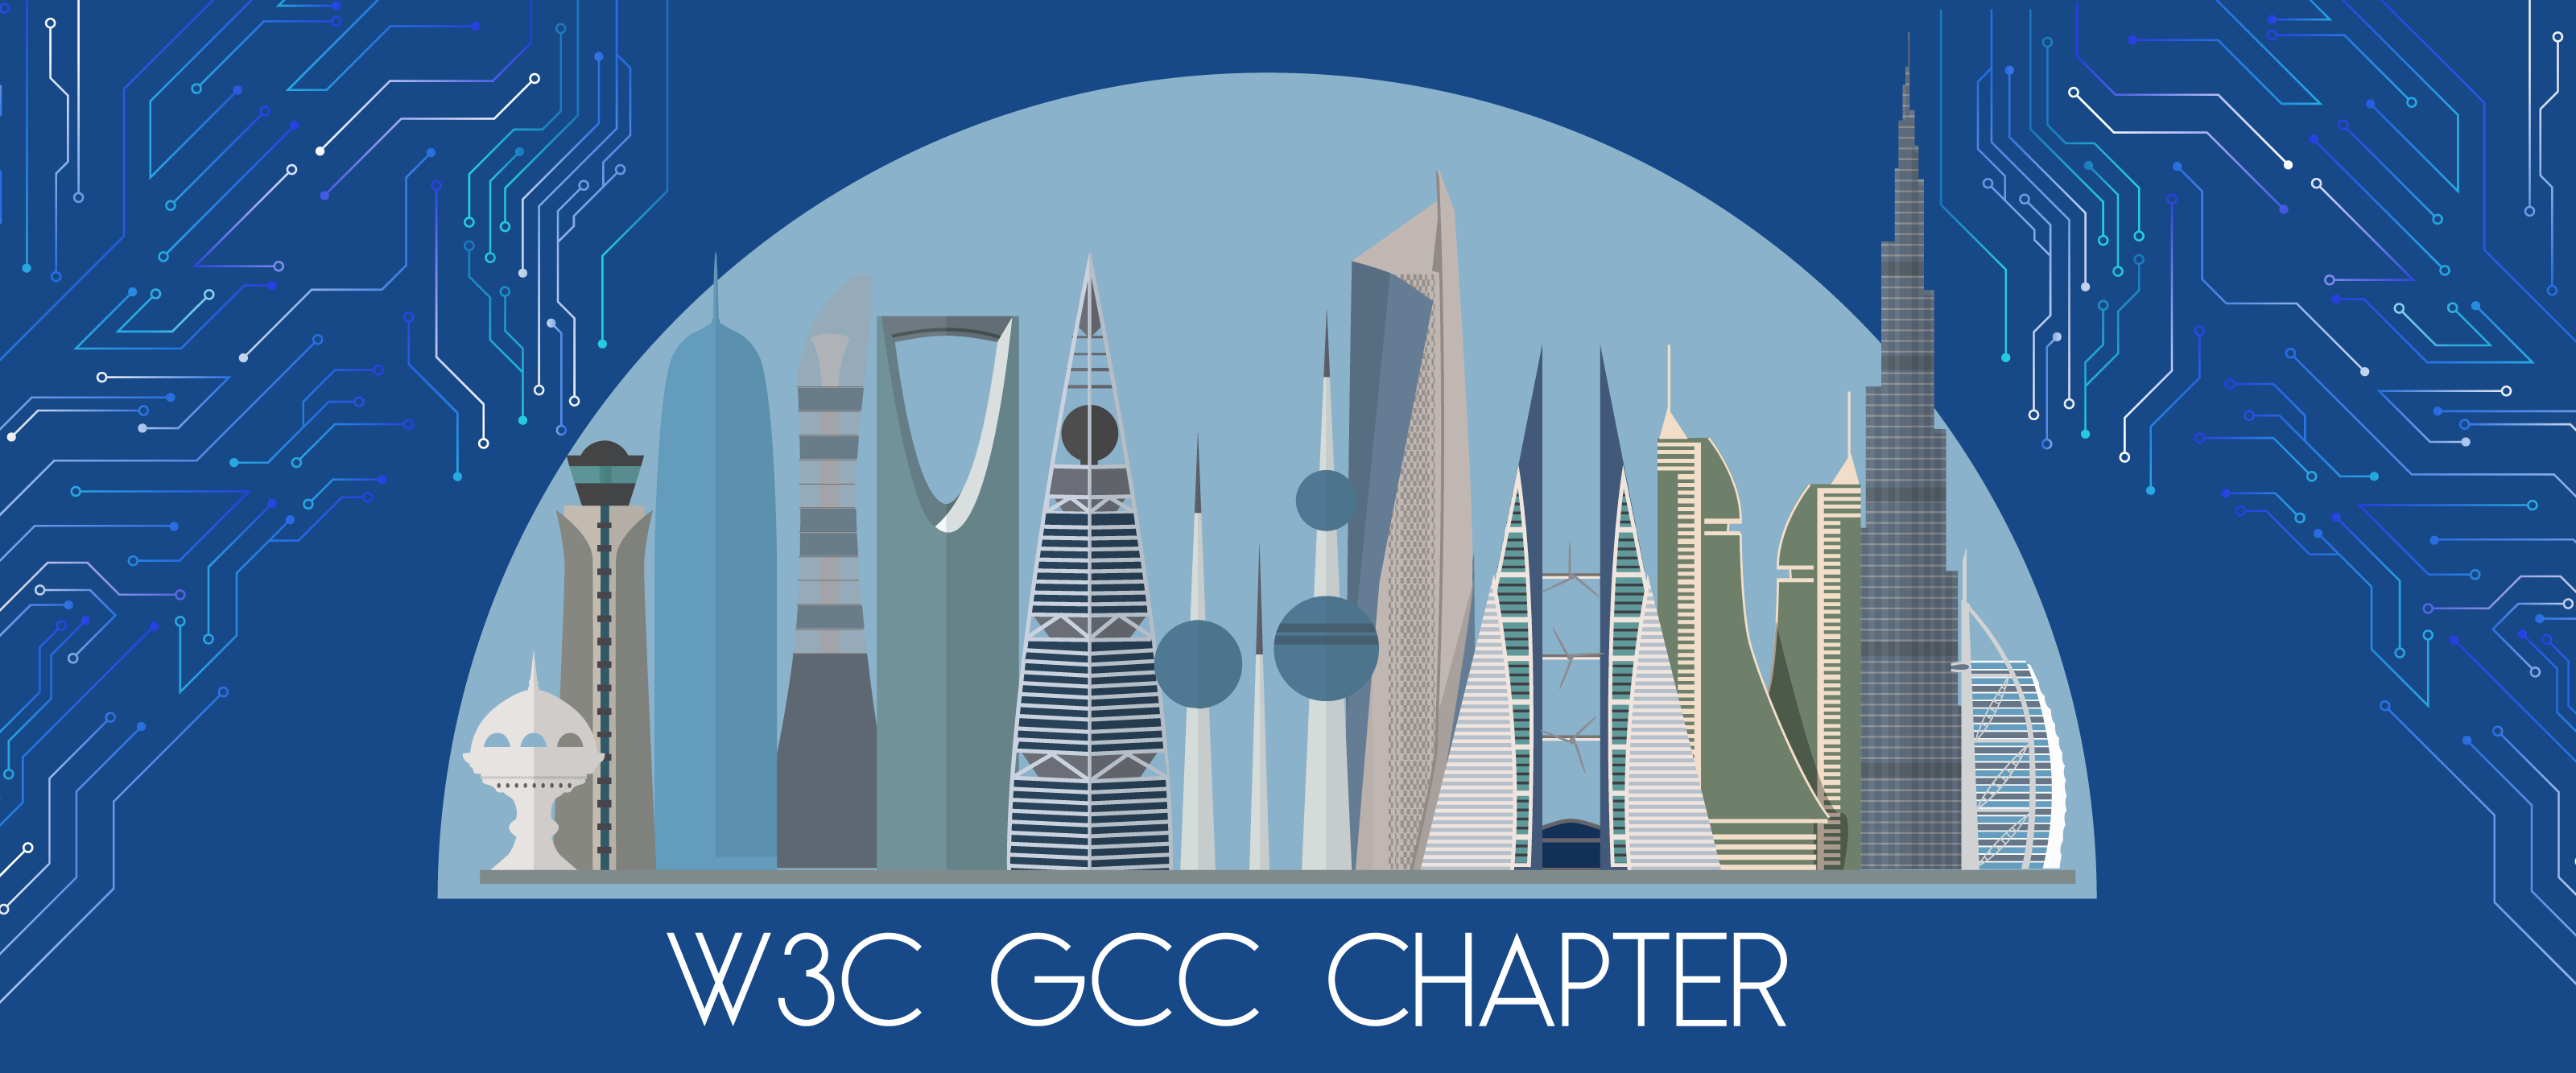 W3C GCC Banner